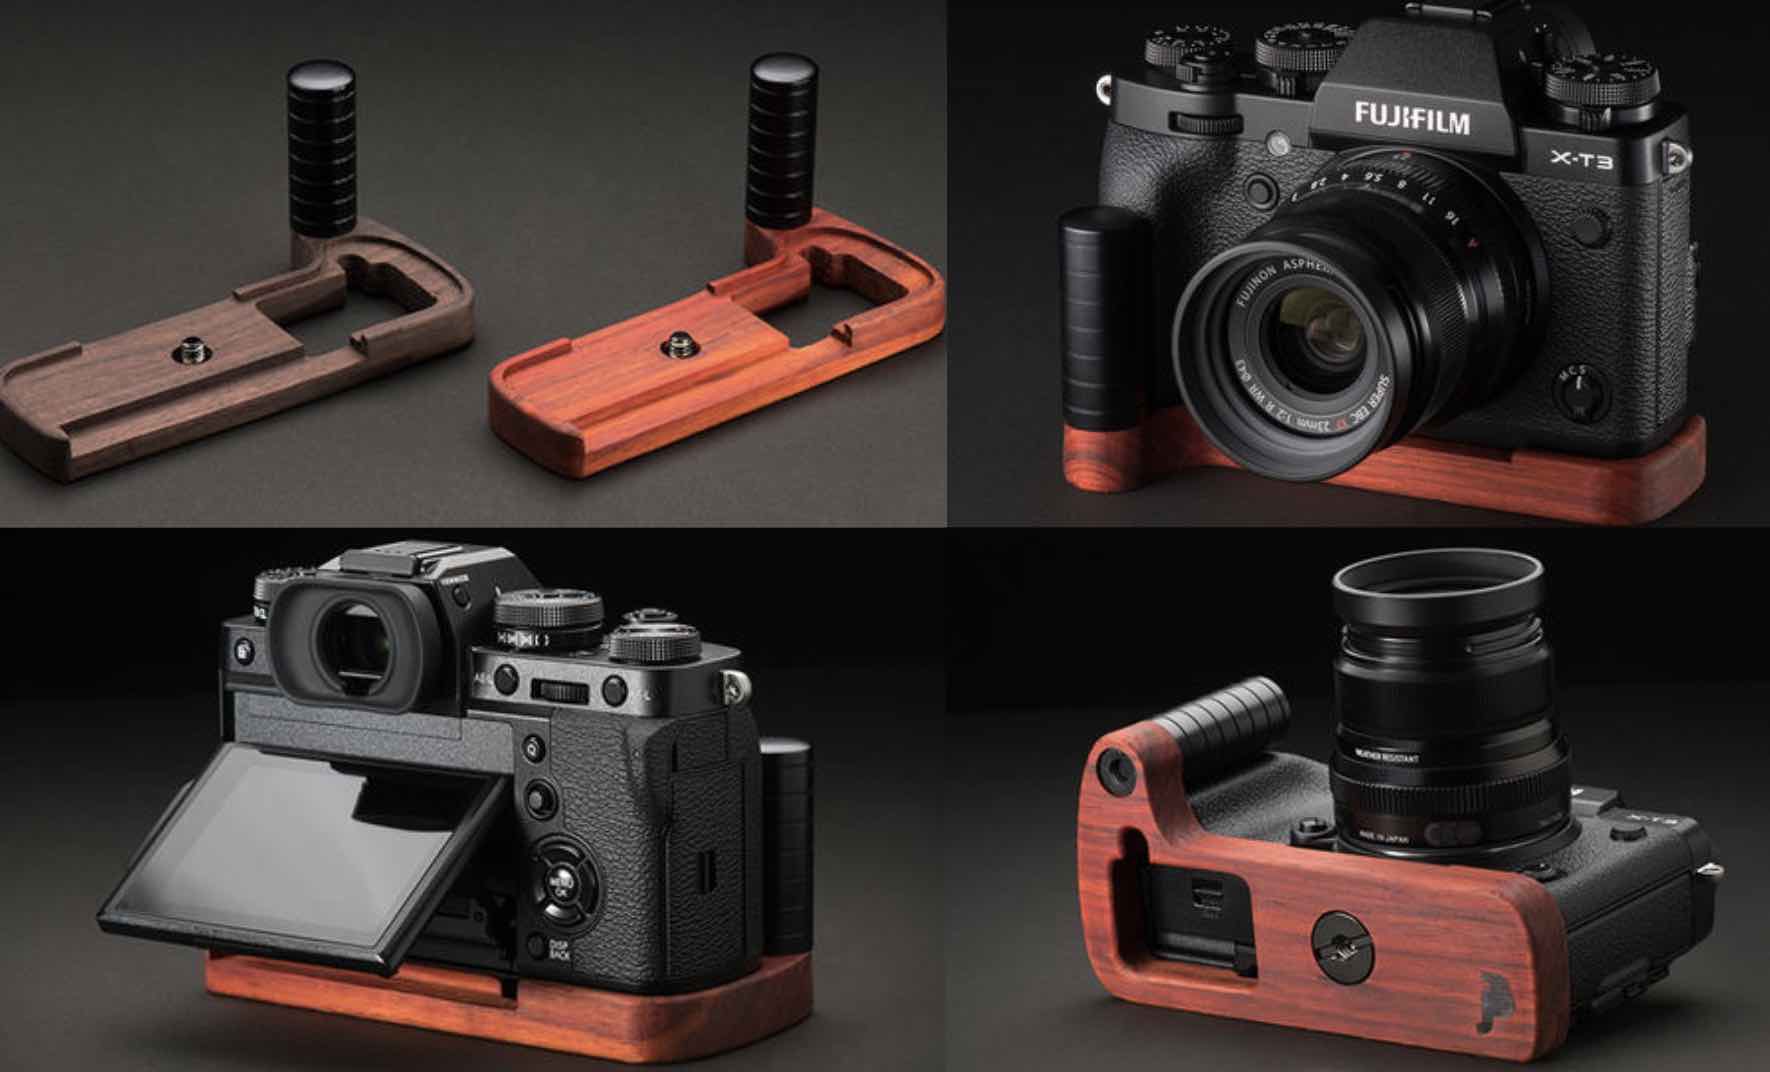 winnen Bladeren verzamelen Deuk Fujifilm X-T3: JBcamera Designs Wooden Grip, Half Cases and Major Review  Roundup - Fuji Rumors